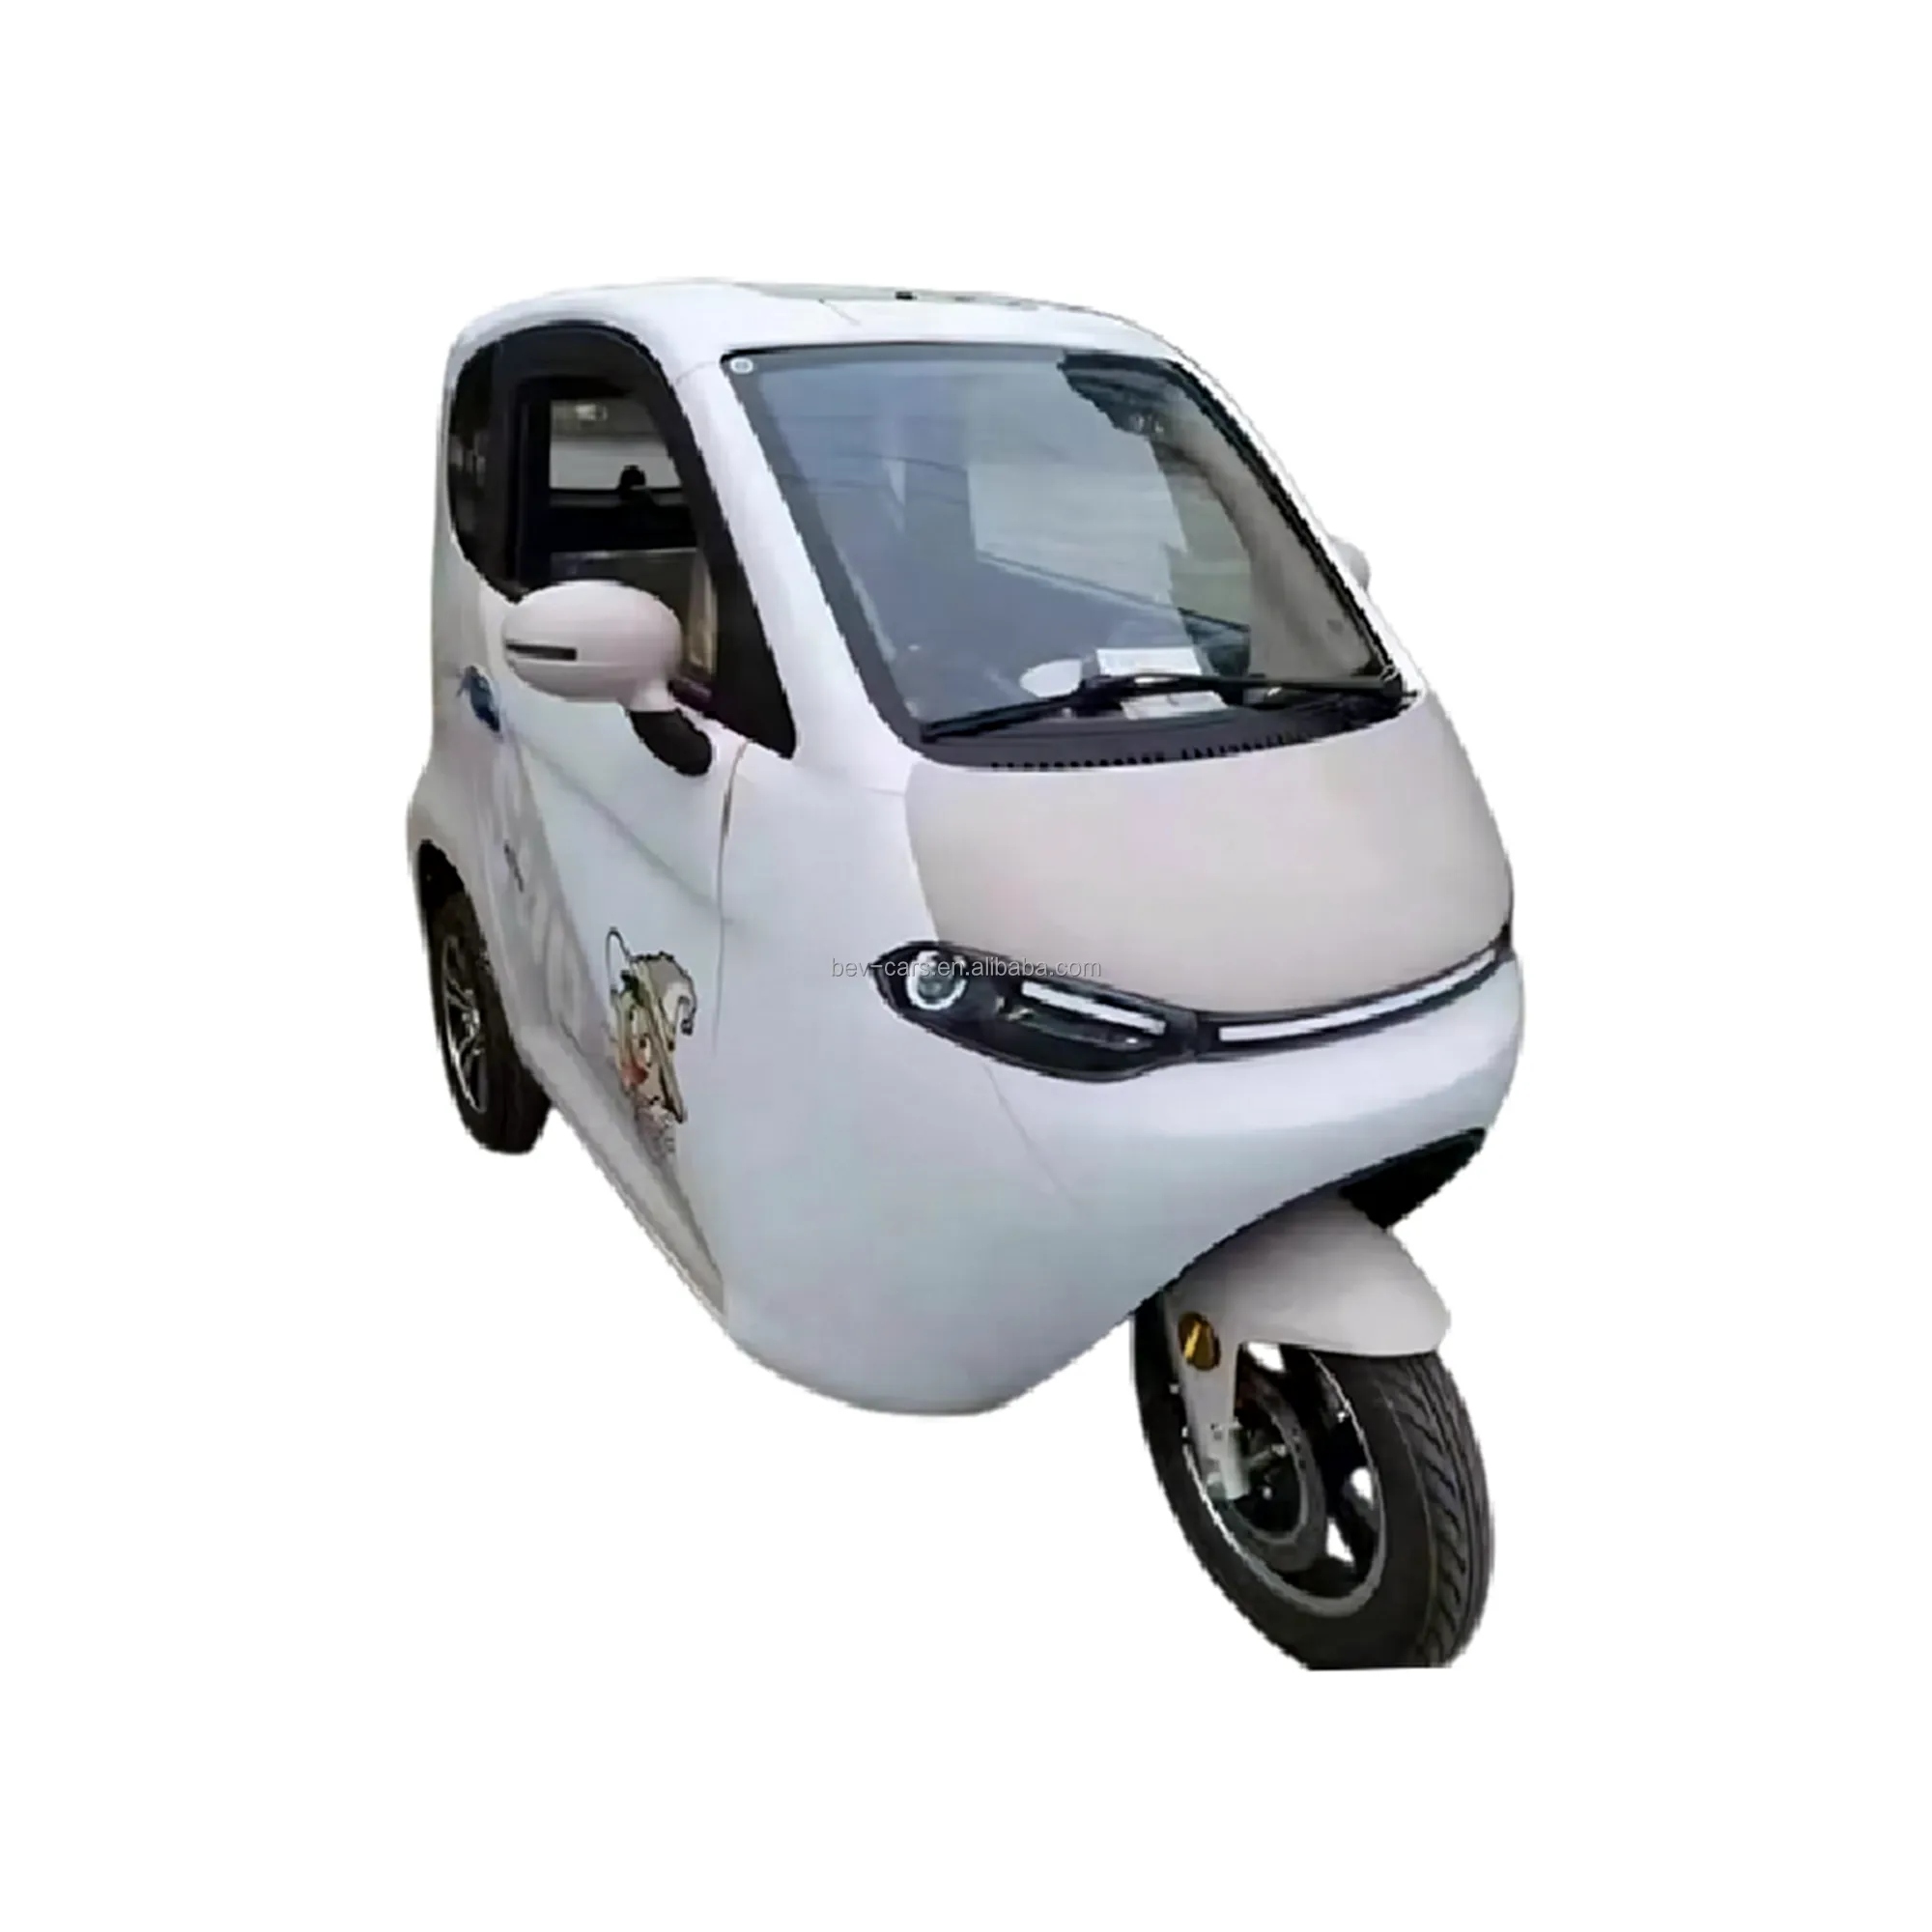 Vente en gros de mini tricycle électrique entièrement fermé pour adultes tricycle électrique certifié EU EEC